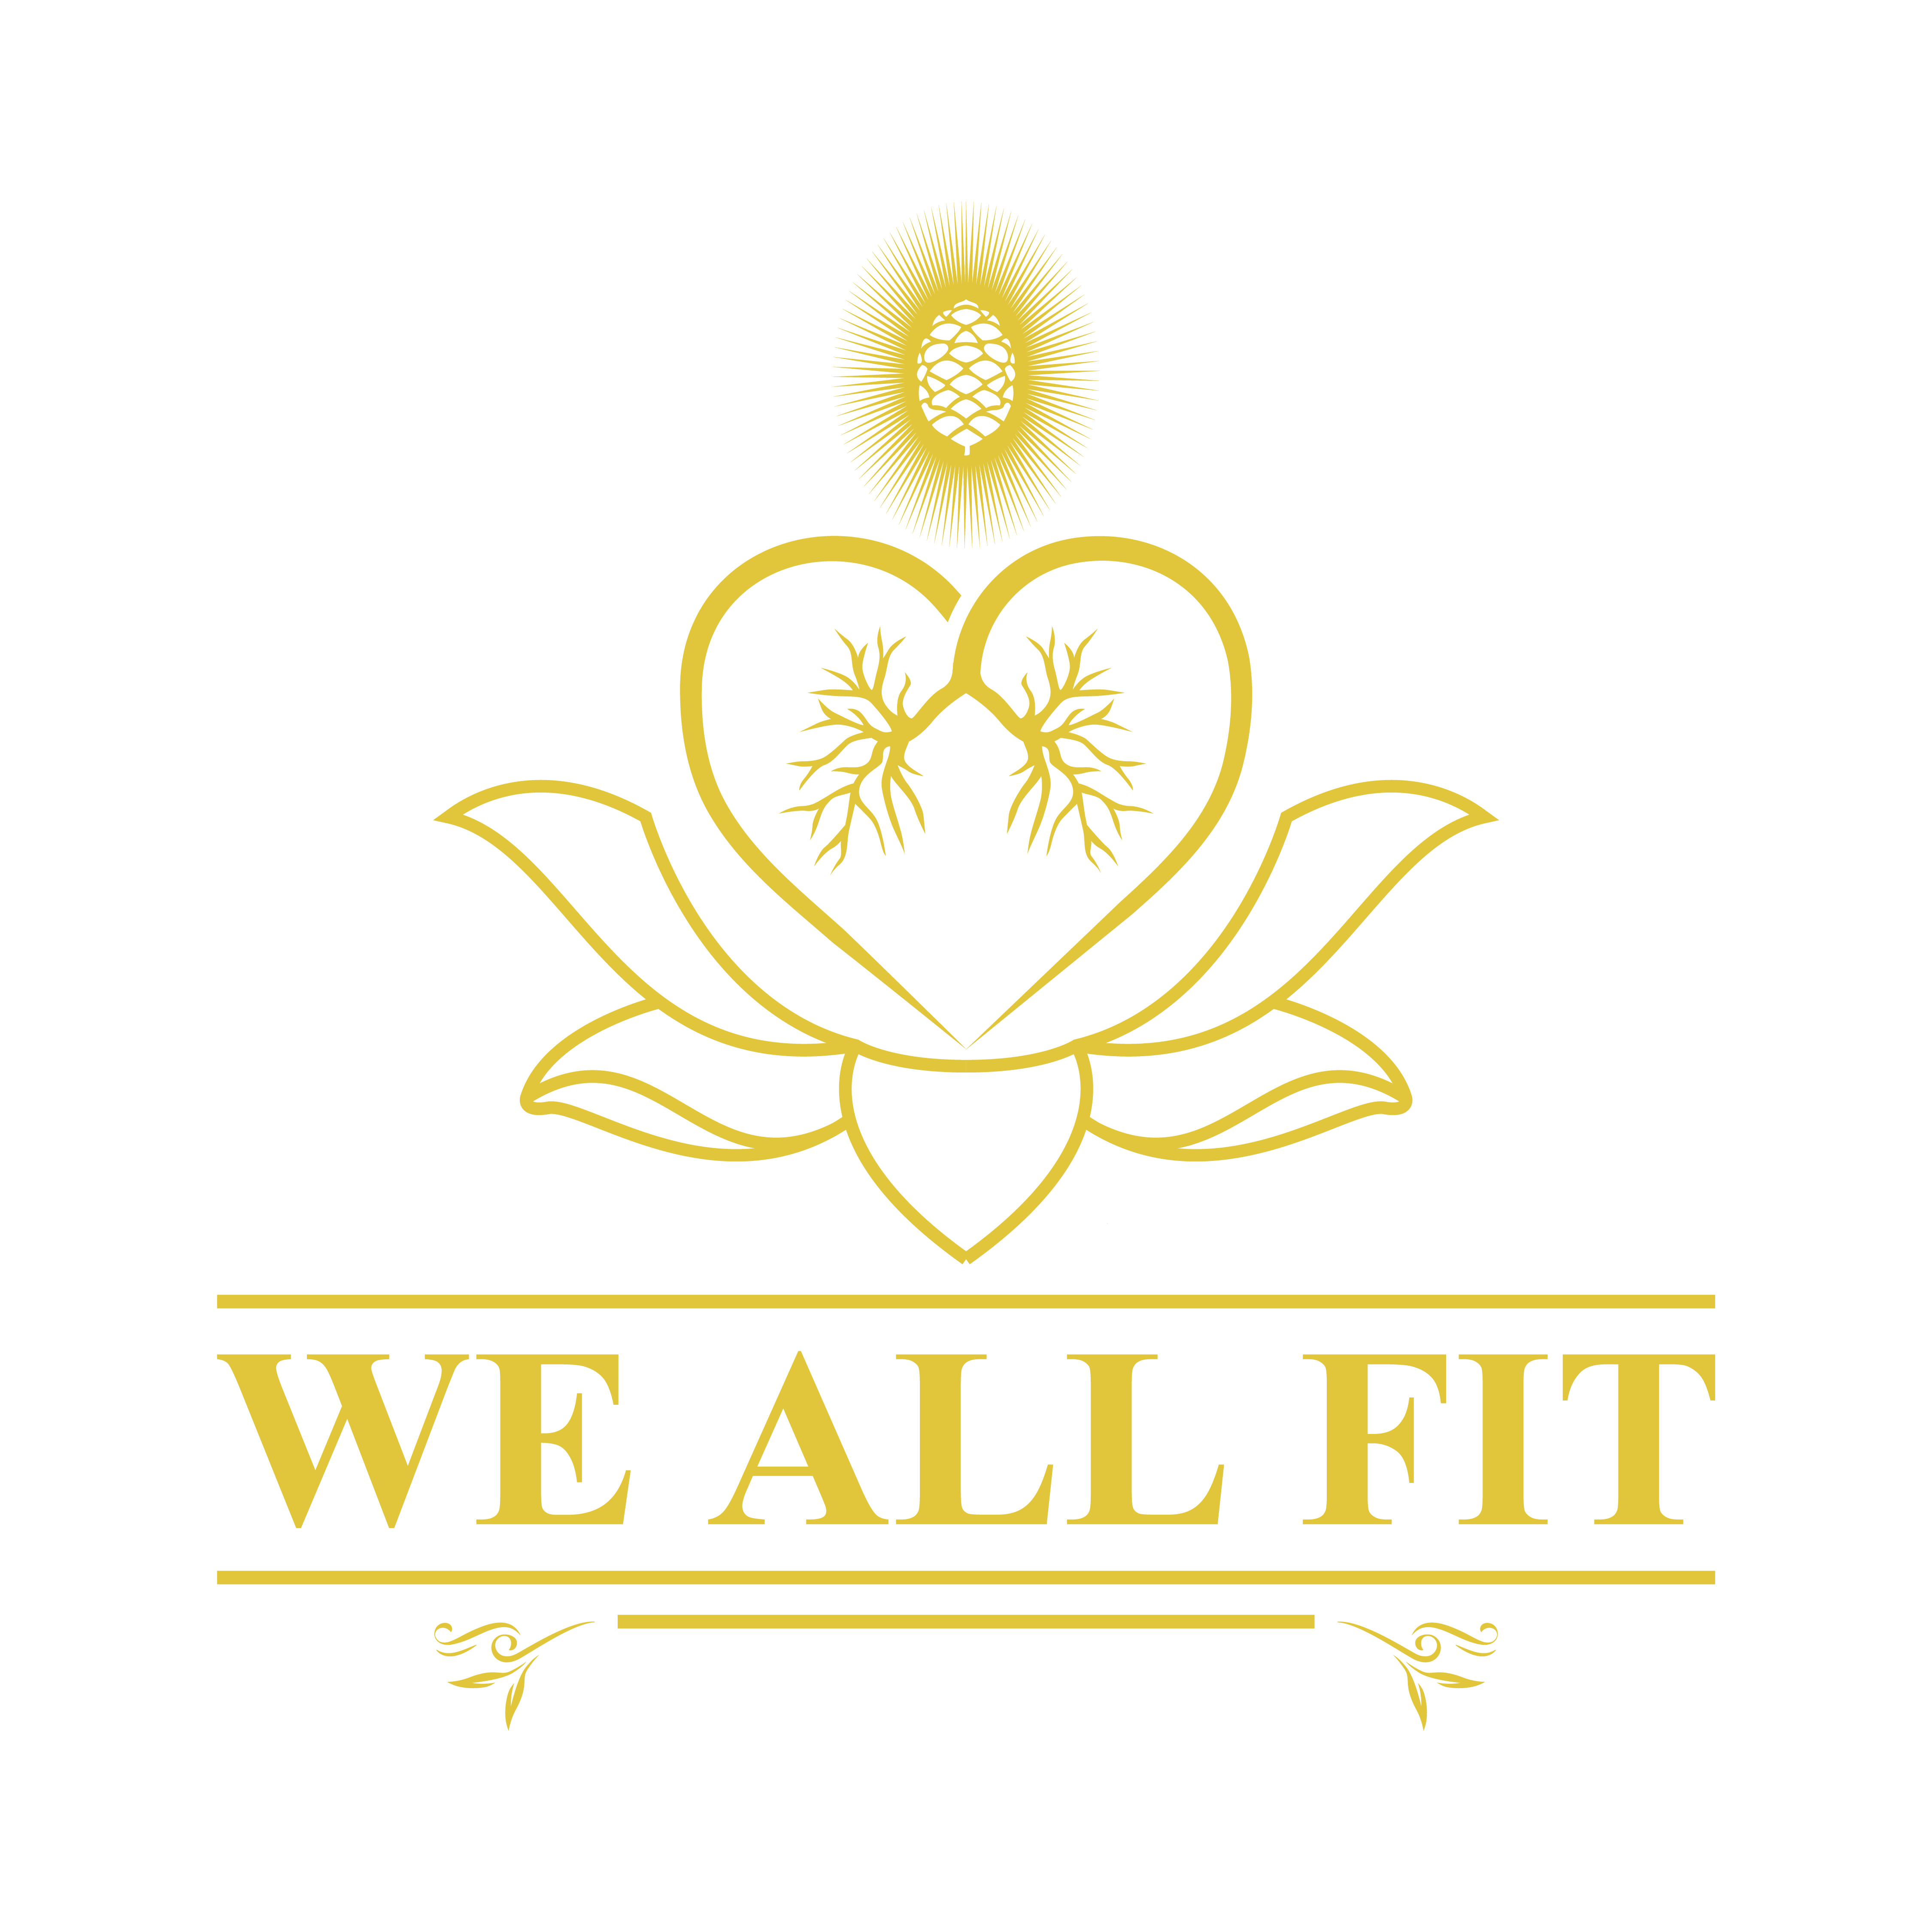 We All Fit Ltd